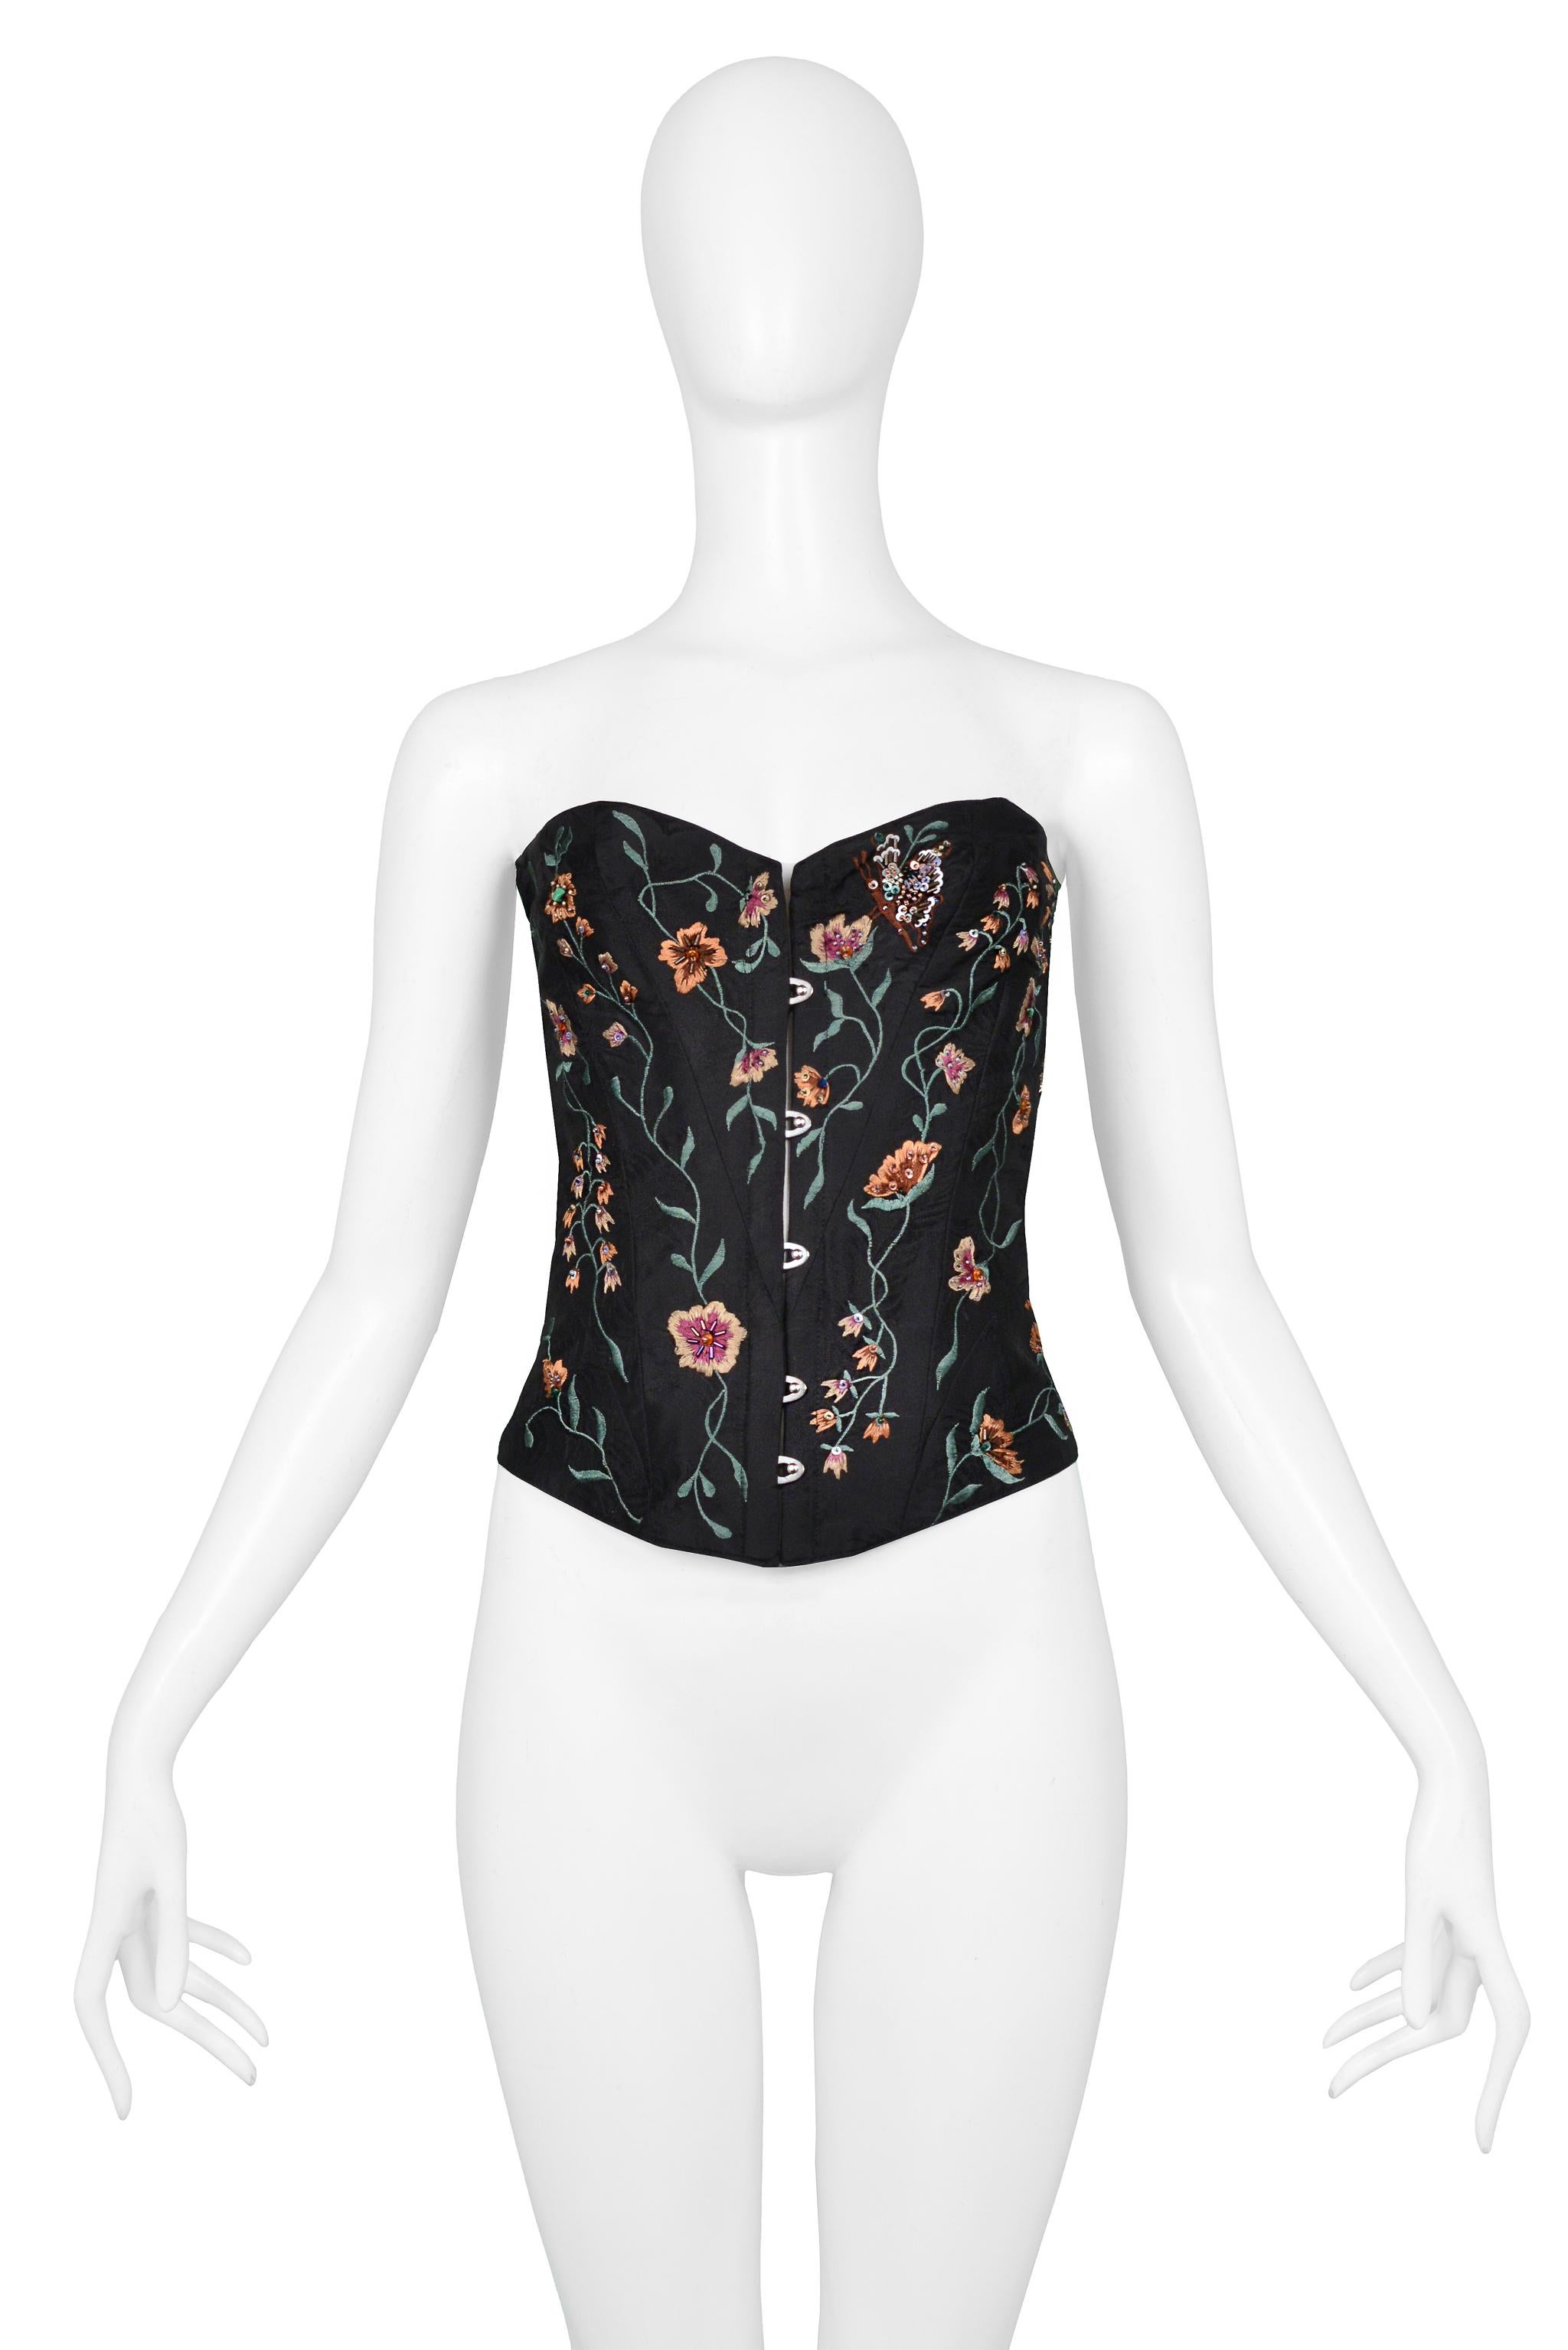 Resurrection Vintage est heureux d'offrir un bustier corset noir vintage Lolita Lempicka avec broderie florale, perles et lacets en ruban de satin noir dans le dos, et doublure en soie. 

Lolita Lempicka, Paris
Taille : 42
Soie
Collectional